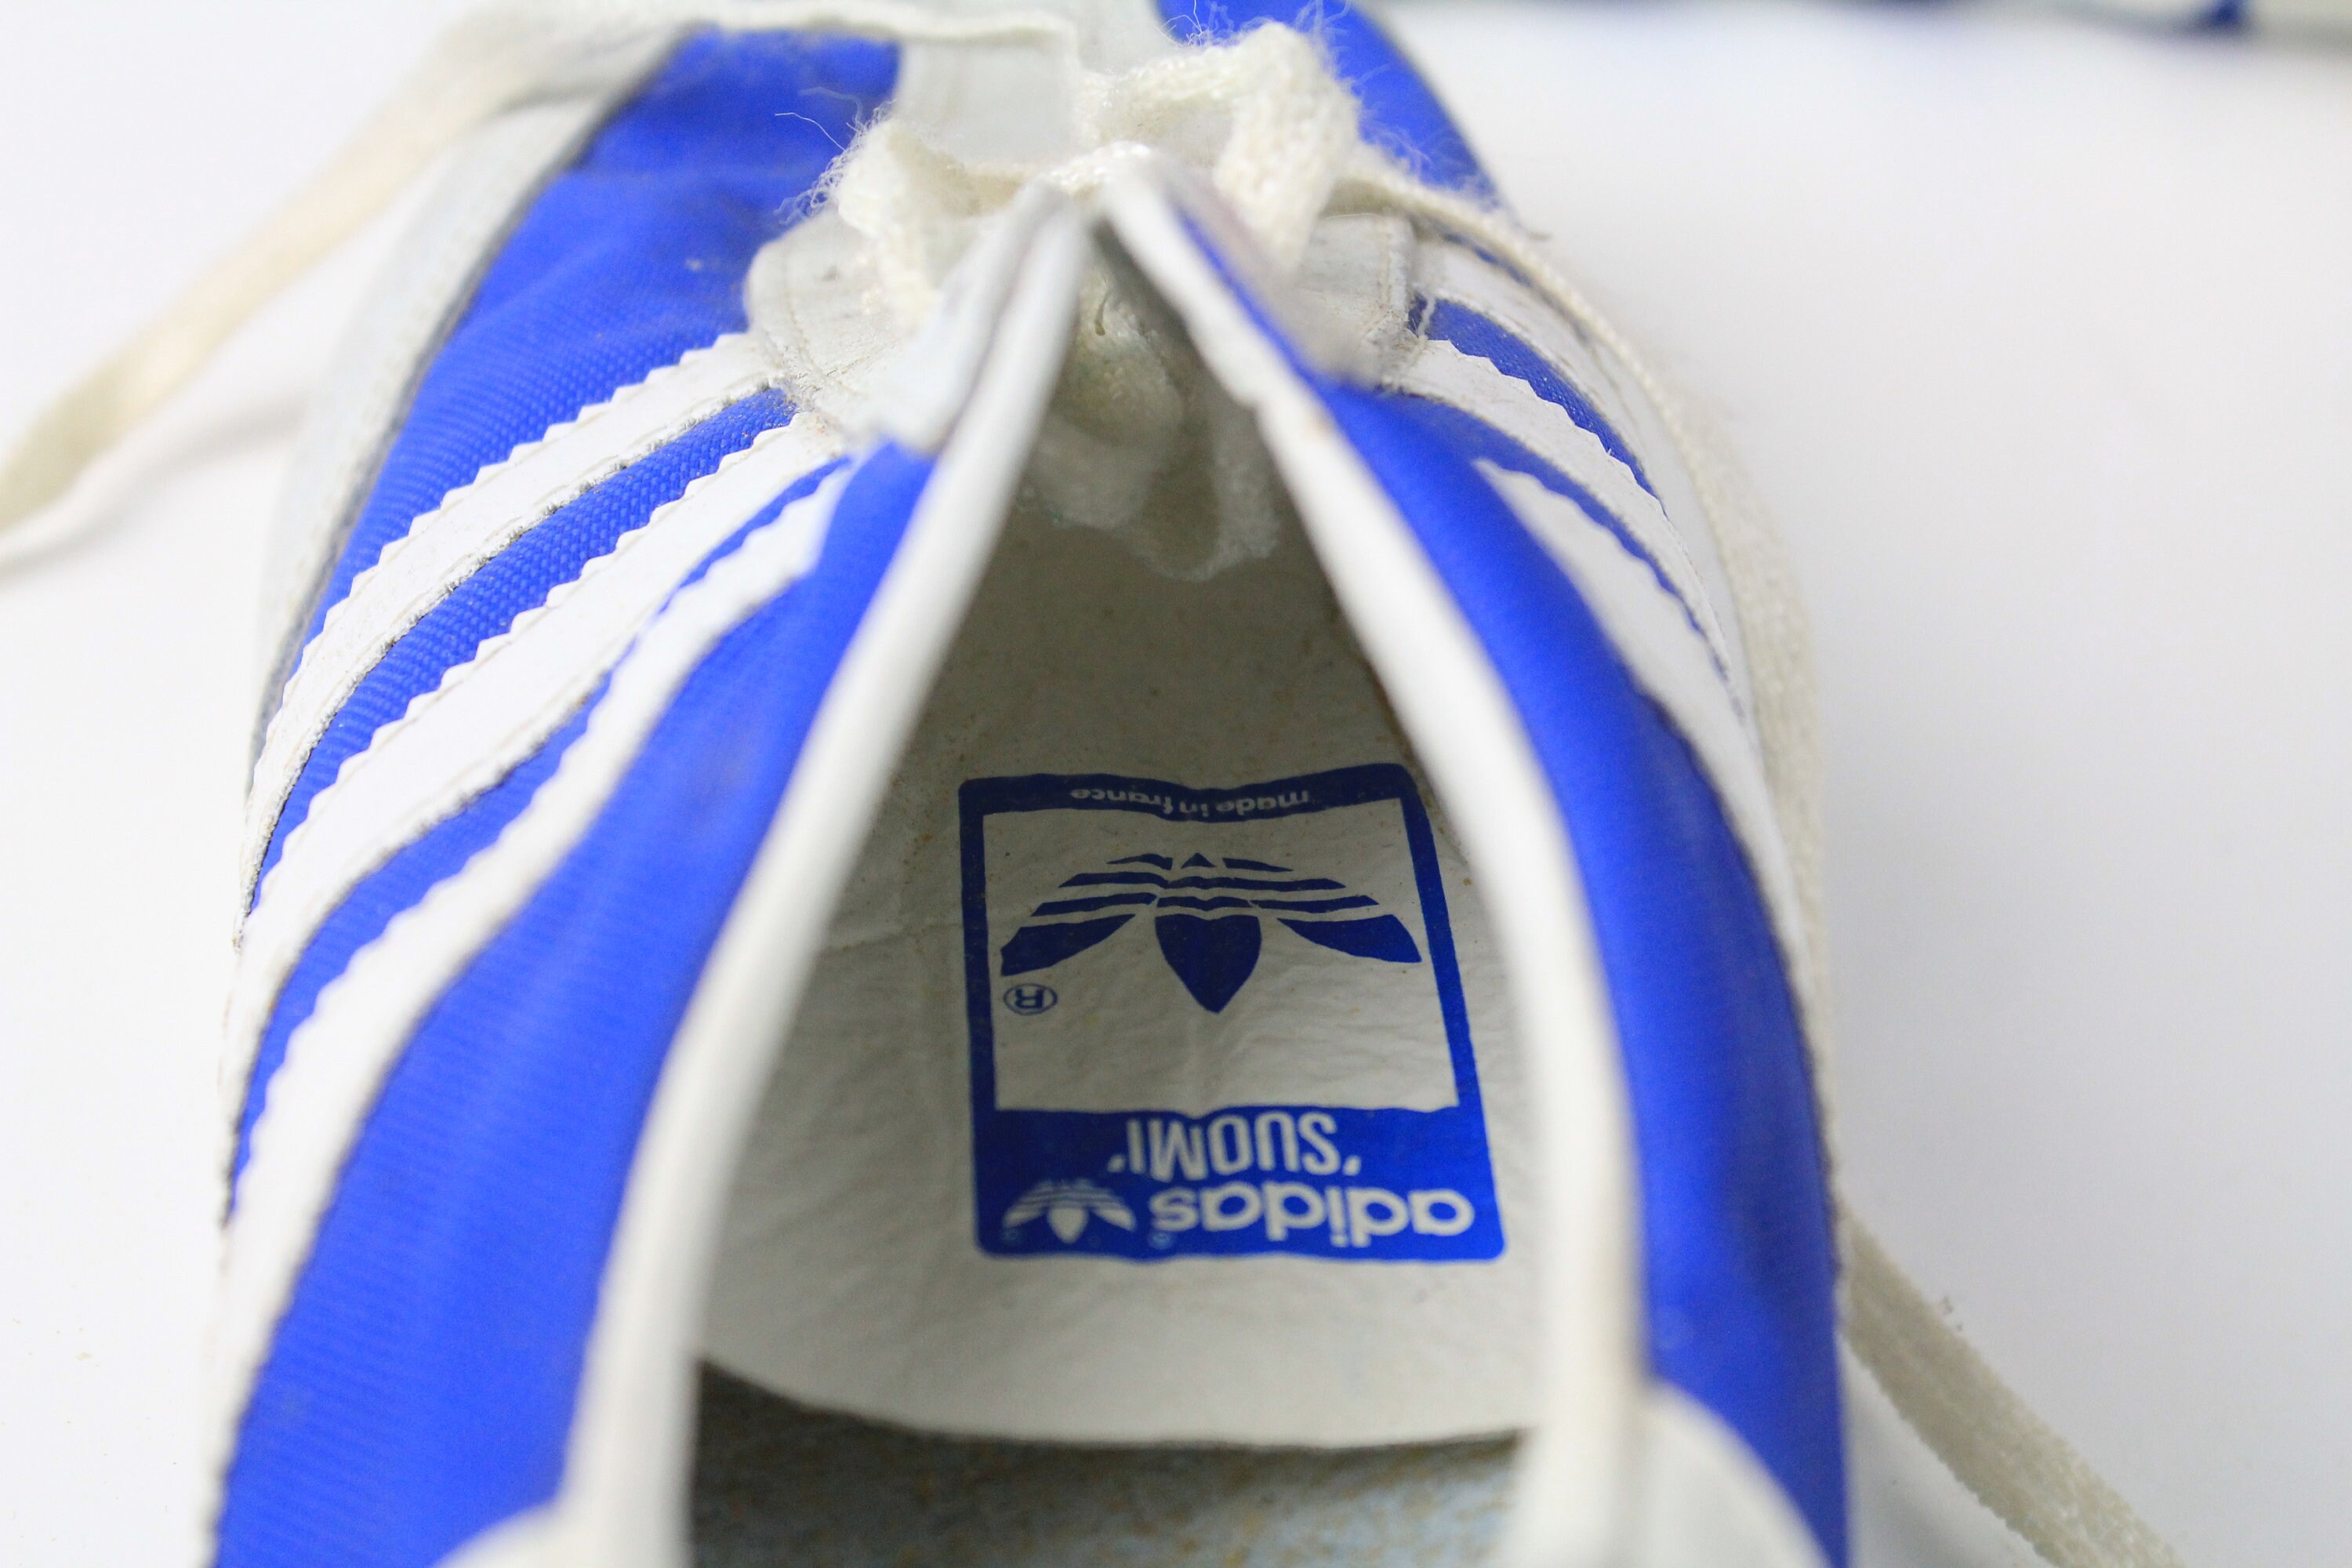 terciopelo pereza local Vintage ADIDAS Suomi Olympic Ski Shoes Size EUR 40 authentic - Etsy España